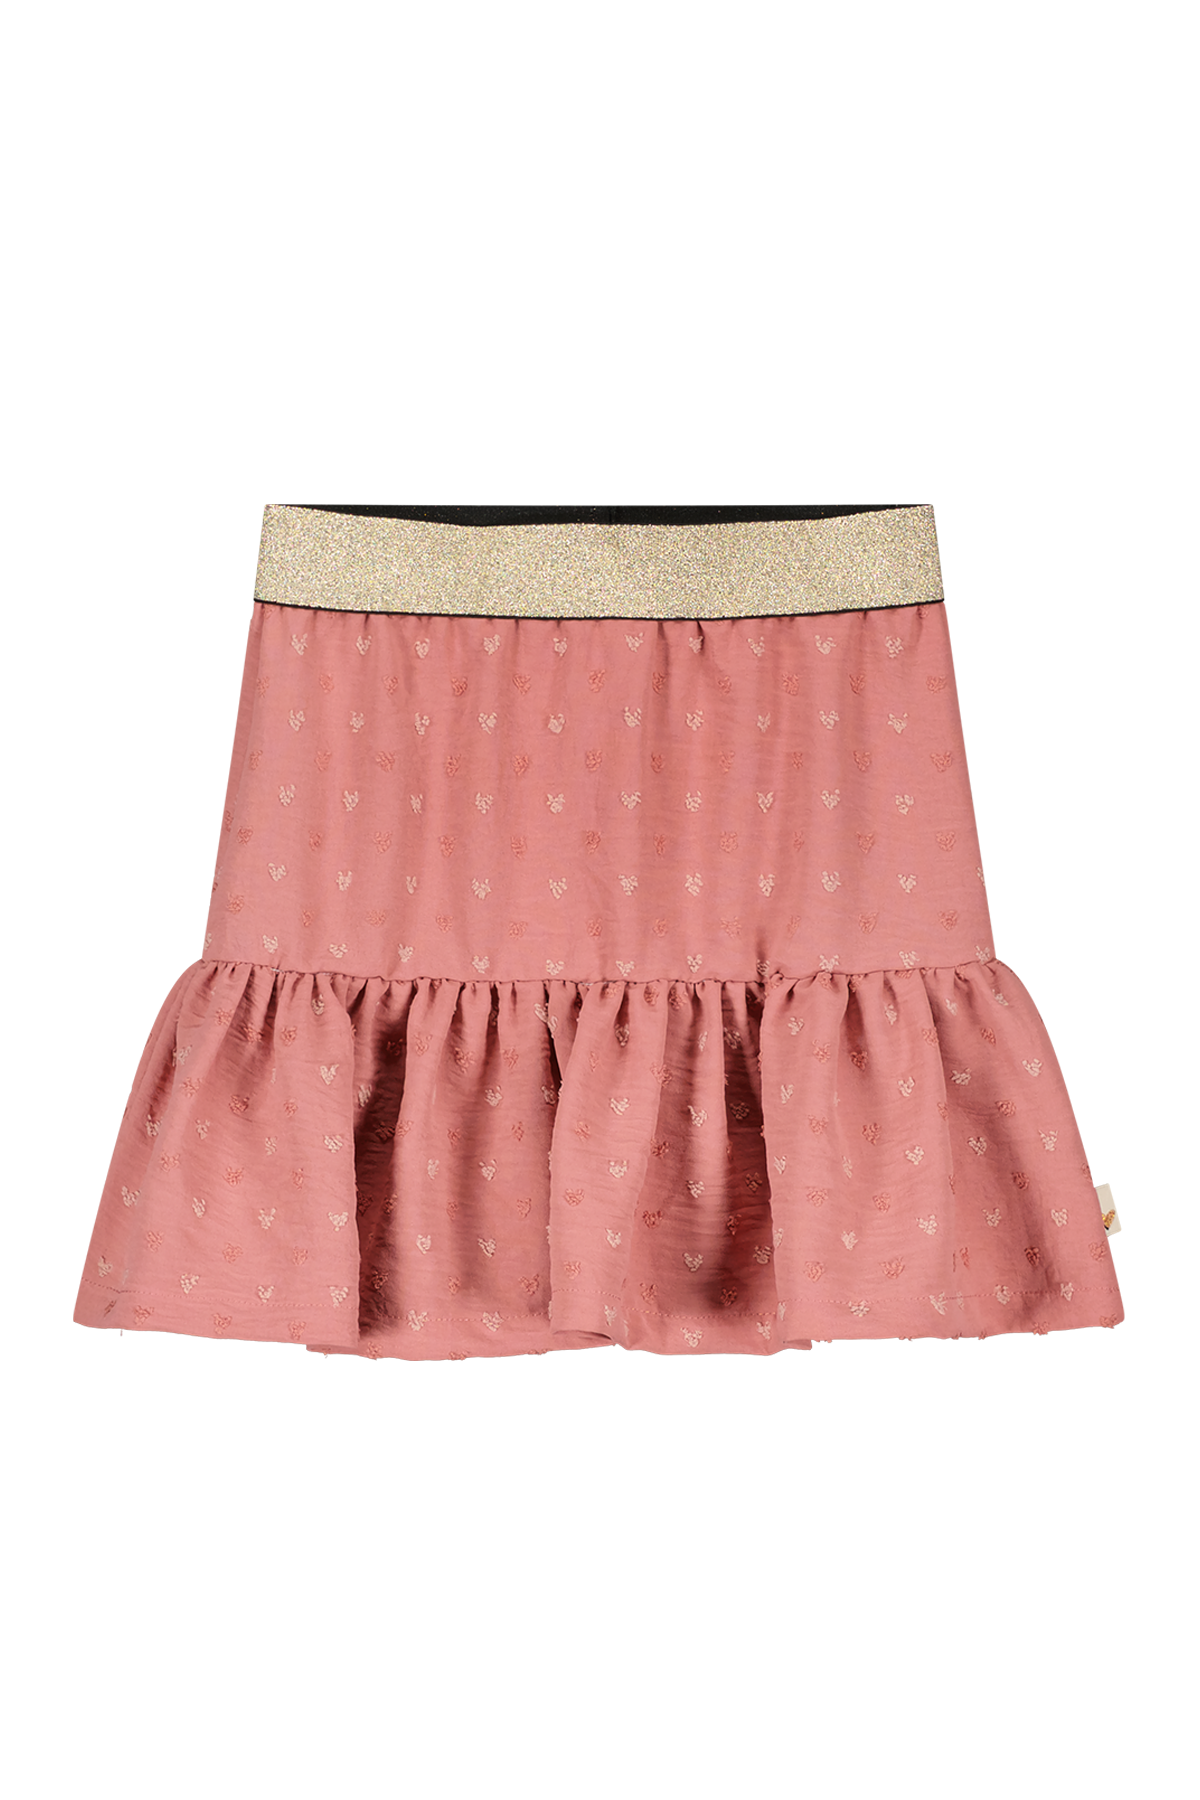 Rok Girly rose skirt